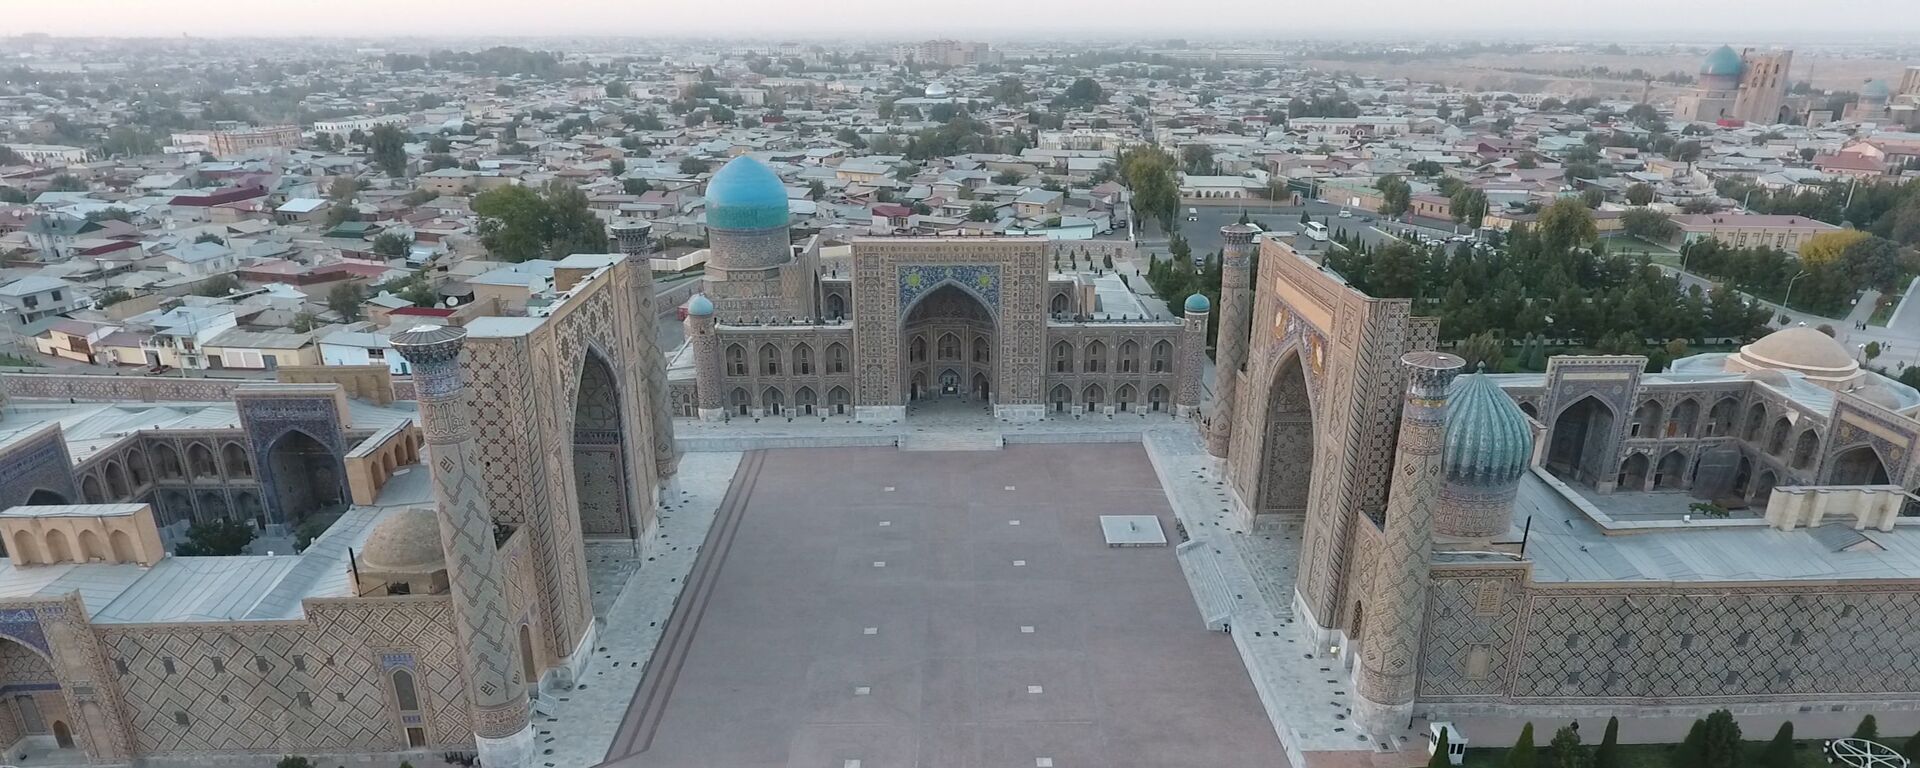 Вид сверху на площадь Регистан в Самарканде - Sputnik Узбекистан, 1920, 09.04.2021